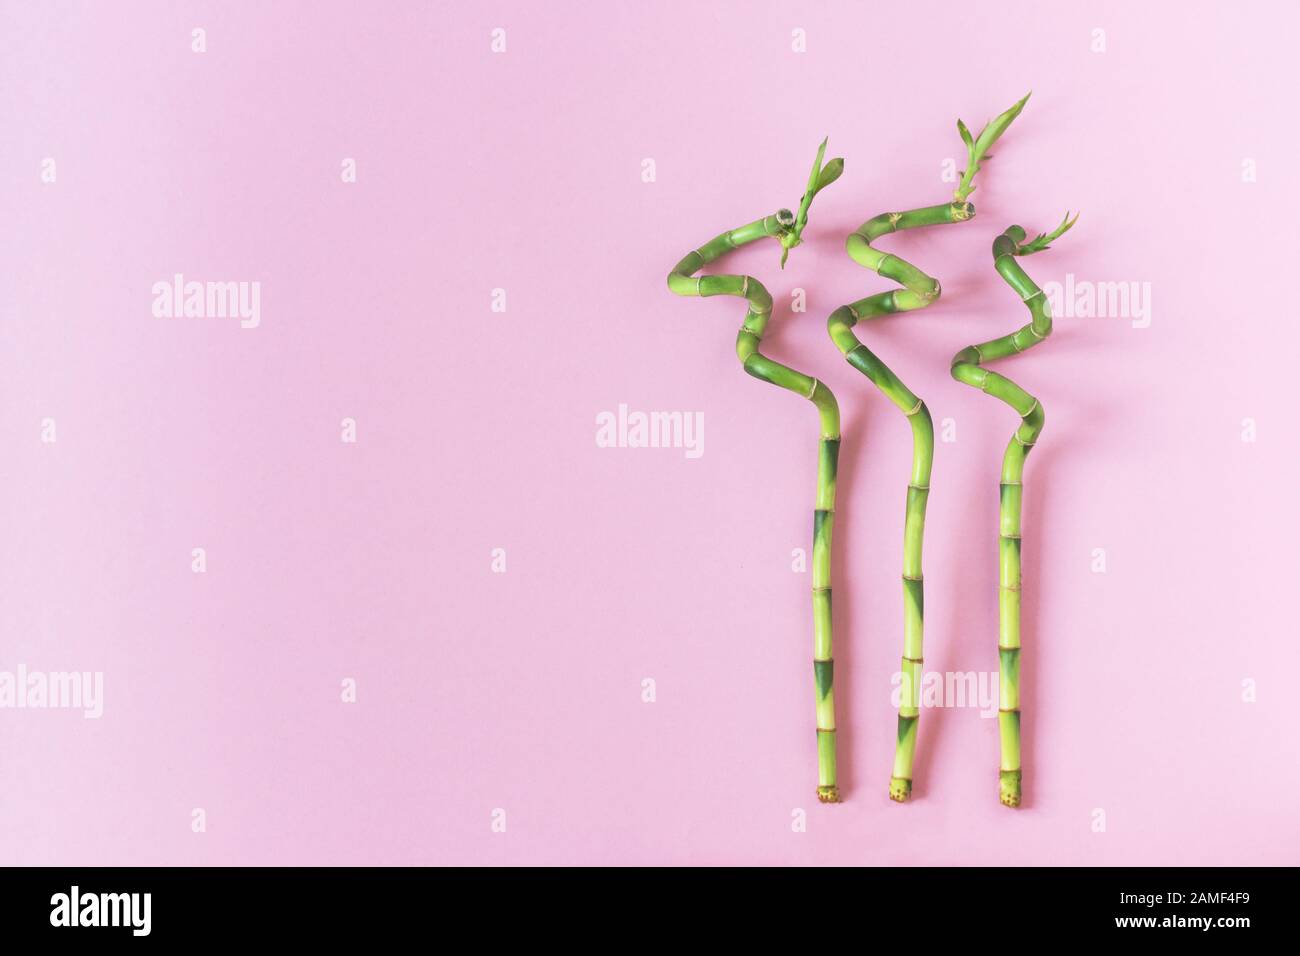 Drei Bambuszweige, die auf rosafarbenem Hintergrund liegen, lagen flach. Ökologie natürlicher Hintergrund mit Bambuspflanzen. Kopierbereich. Stockfoto